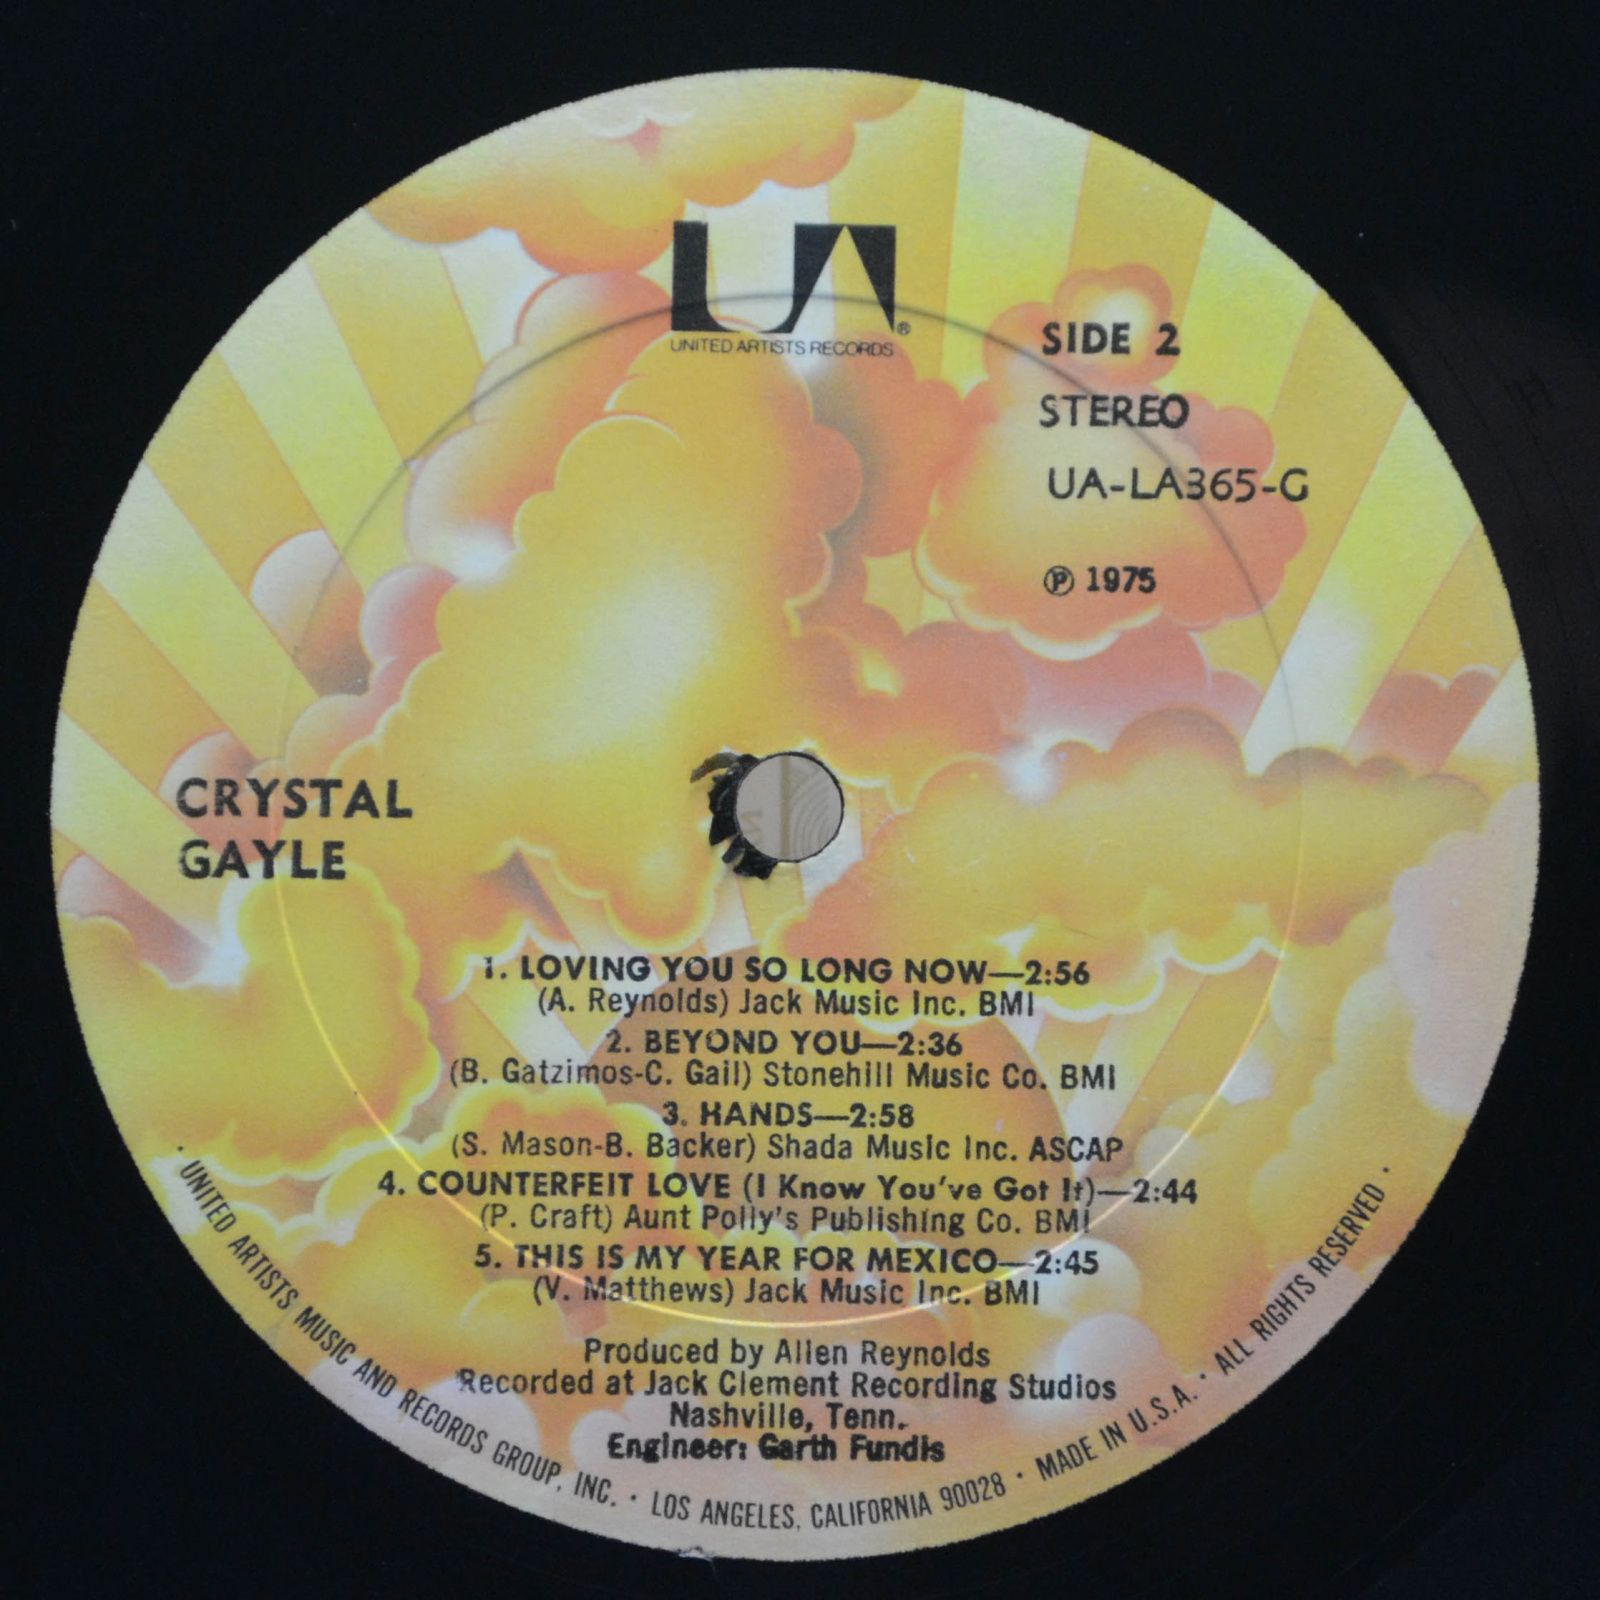 Crystal Gayle — Crystal Gayle, 1975